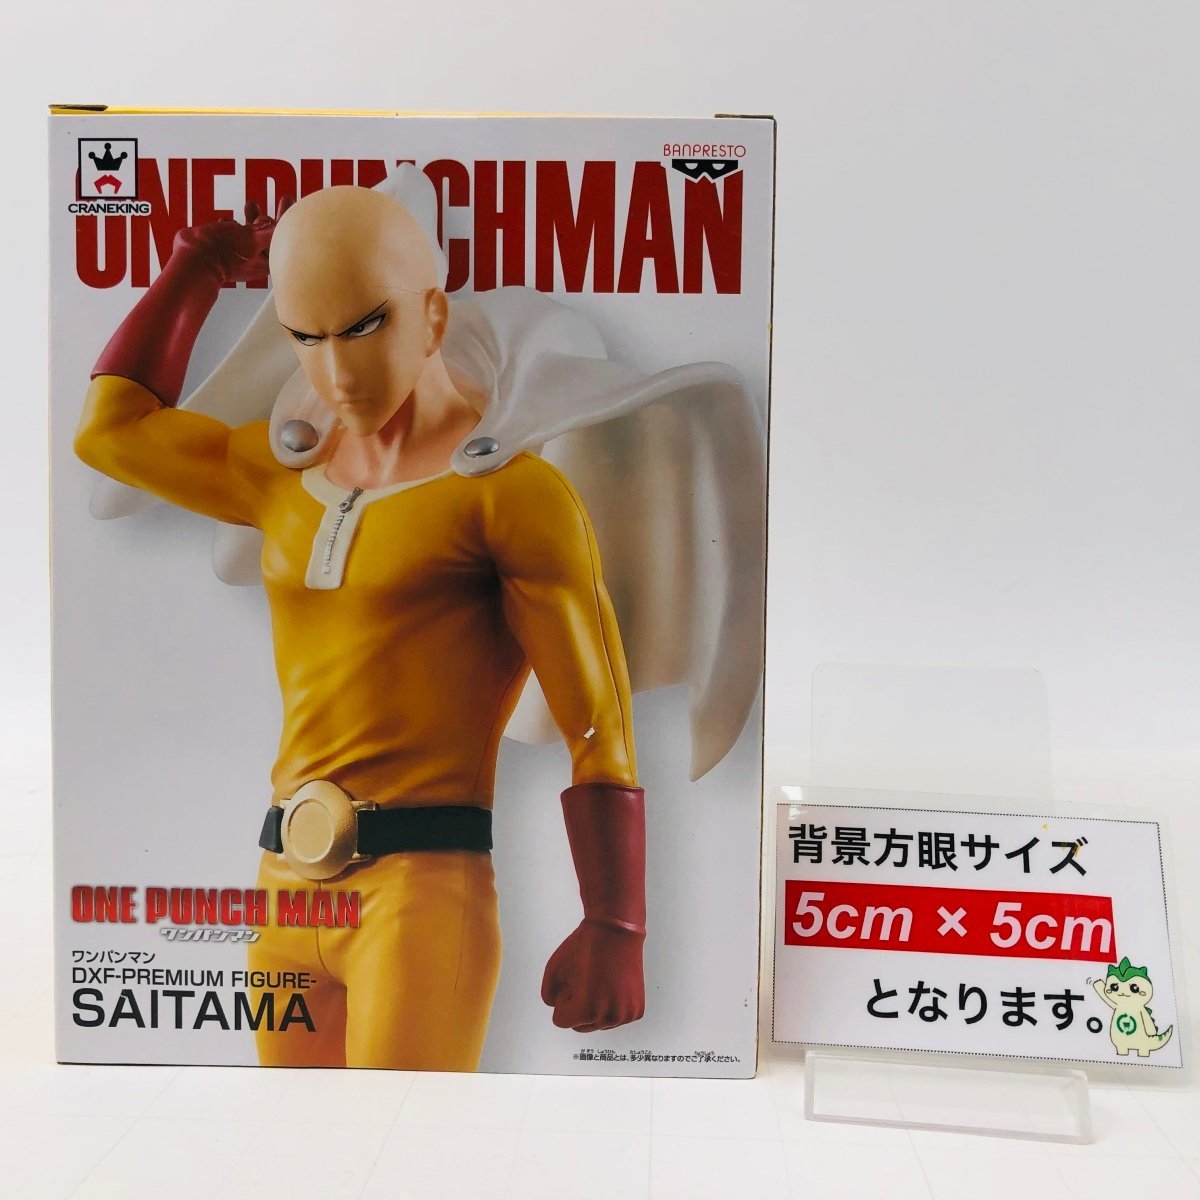 新品未開封 DXF PREMIUM FIGURE SAITAMA ONE PUNCH MAN ワンパンマン サイタマ フィギュア_画像2